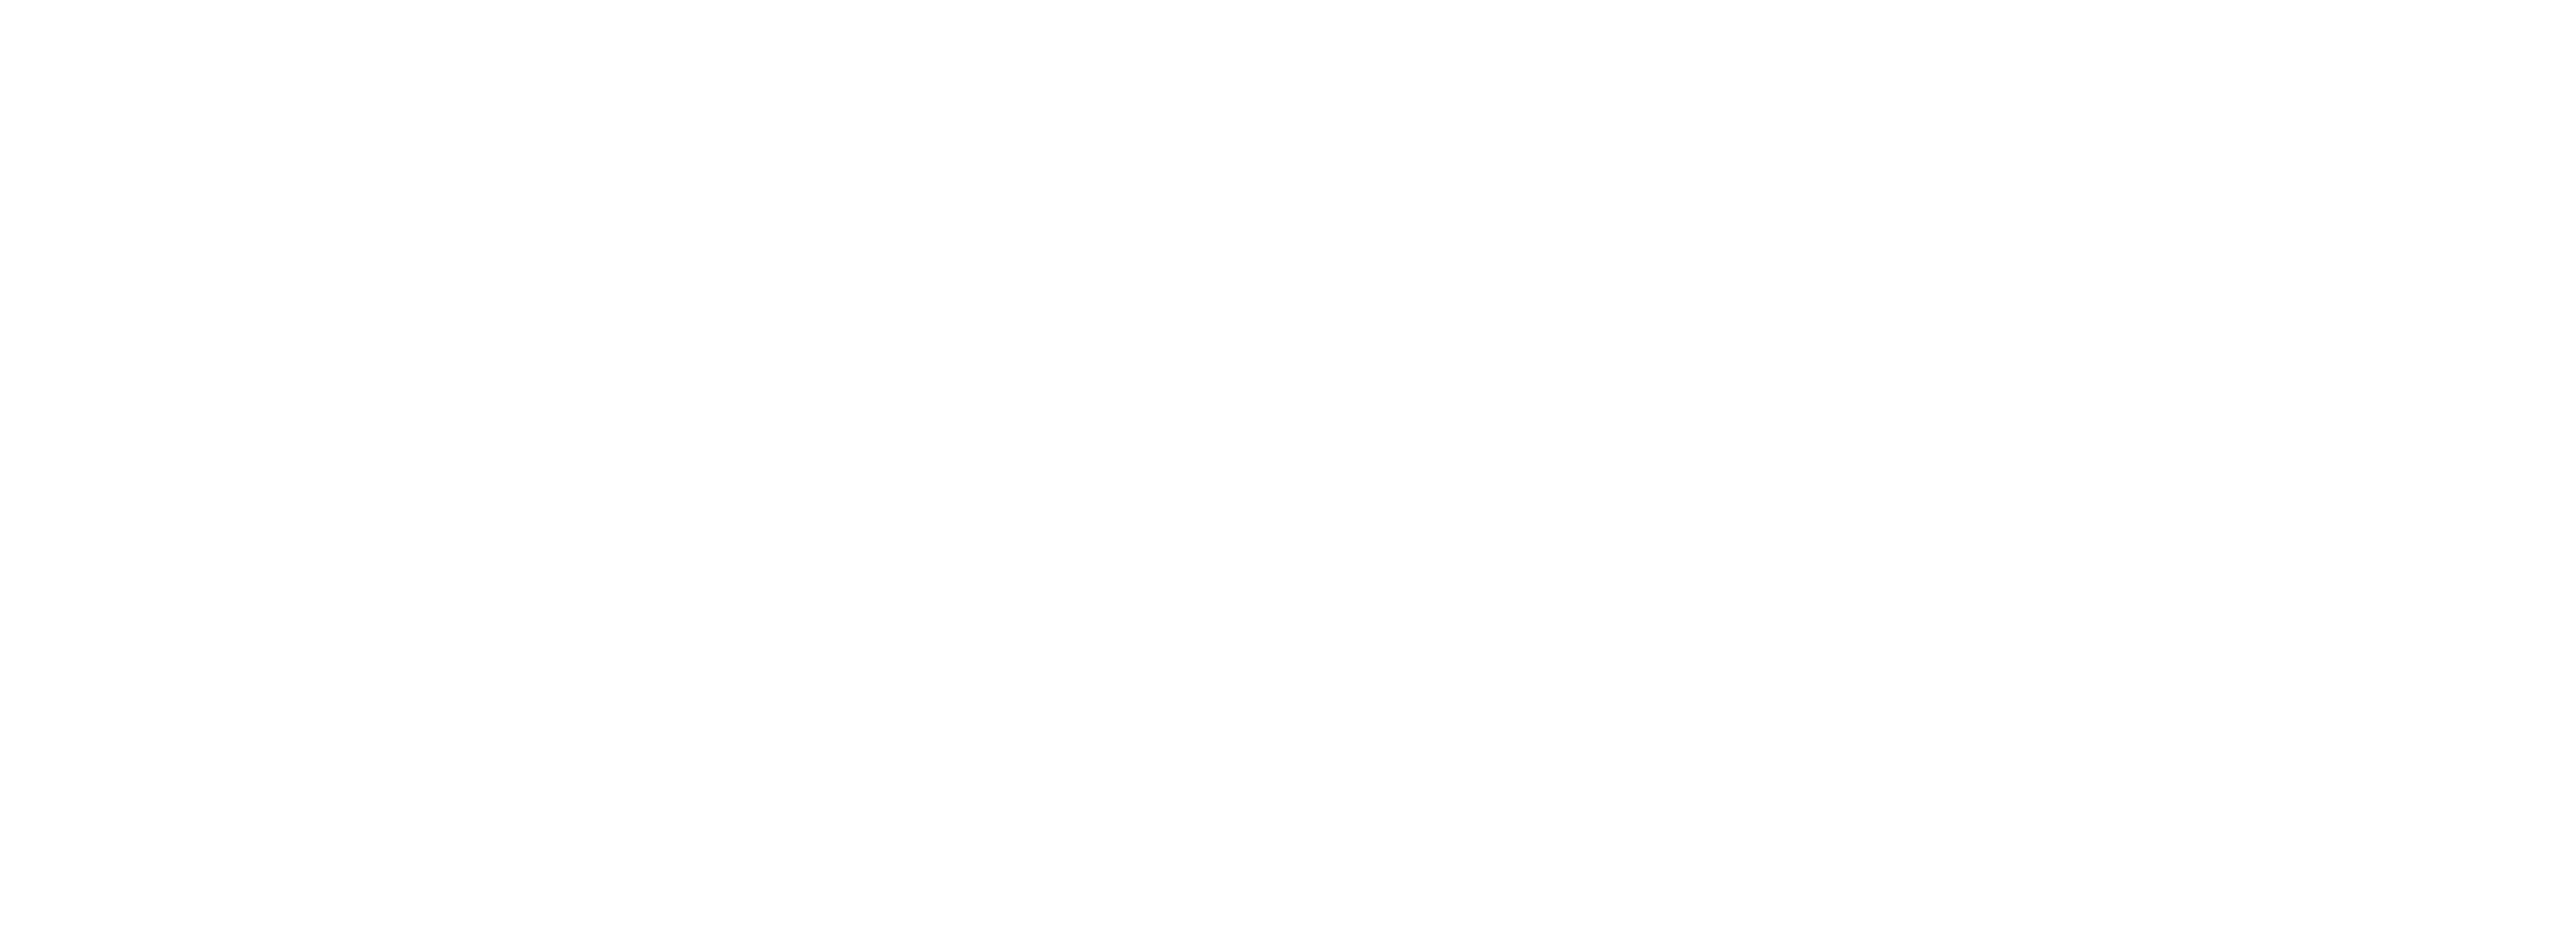 Finnmark fylkeskommune